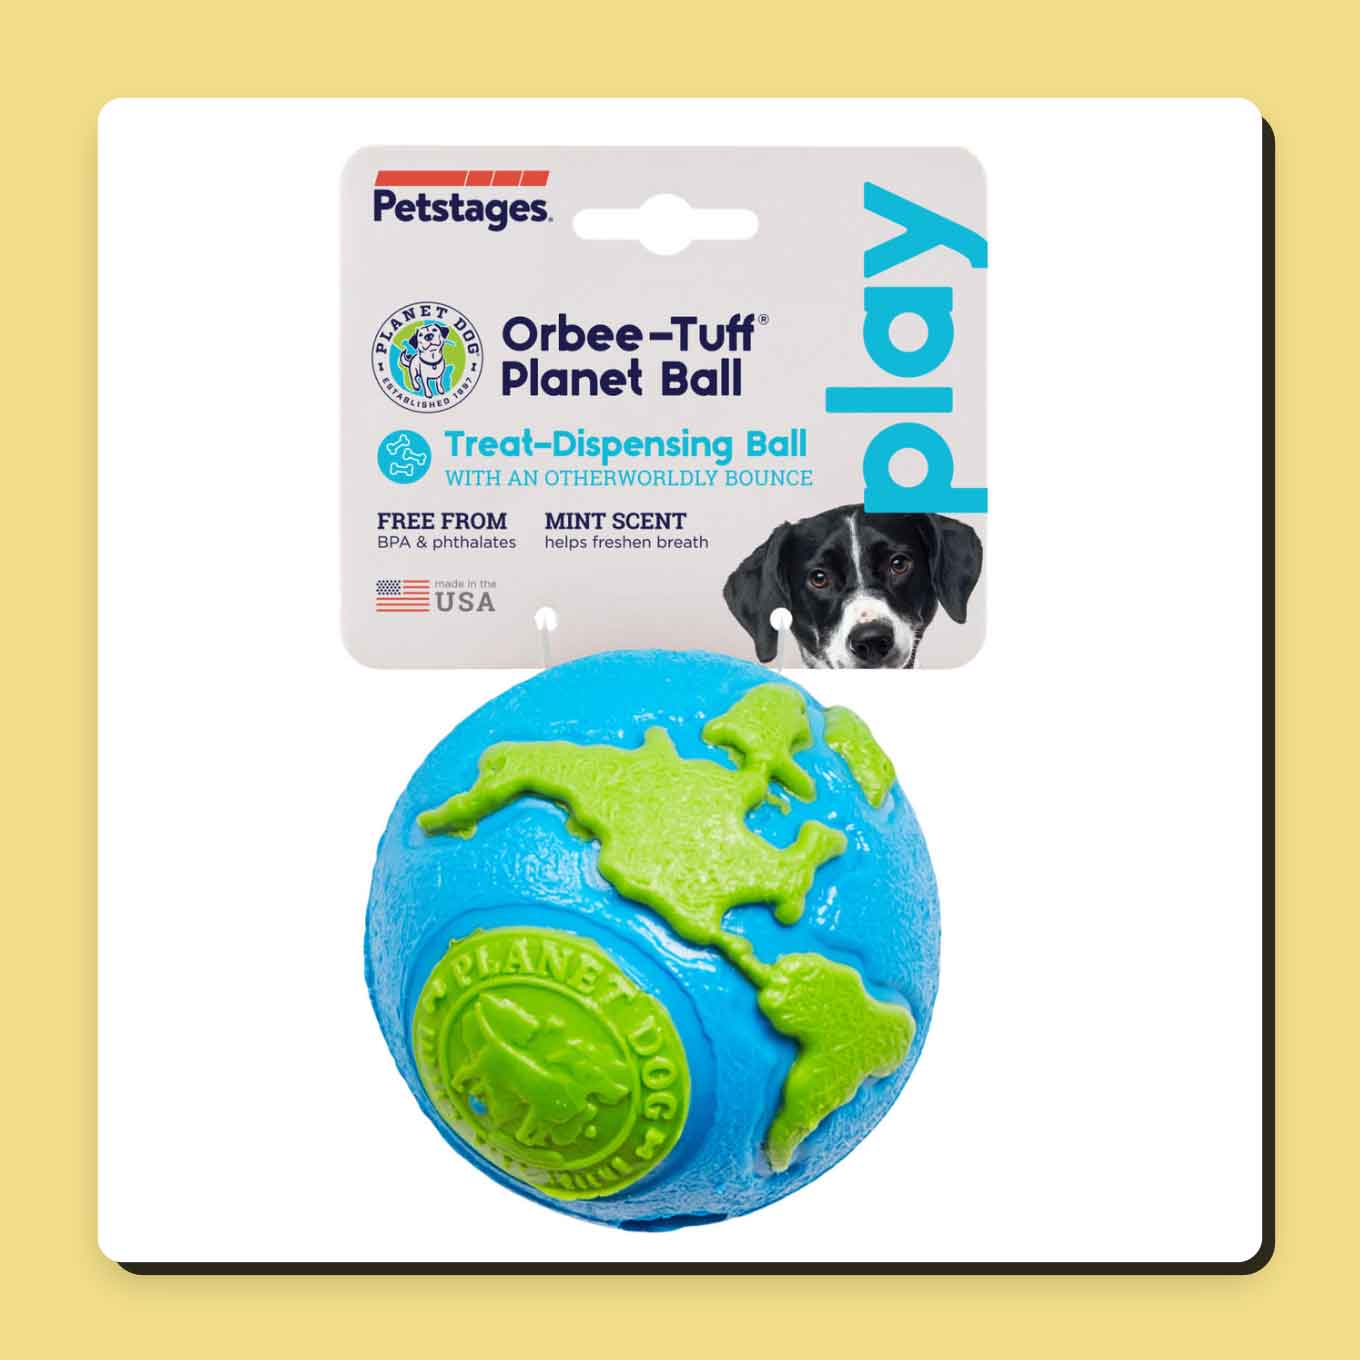 A dog toy shaped like planet Earth